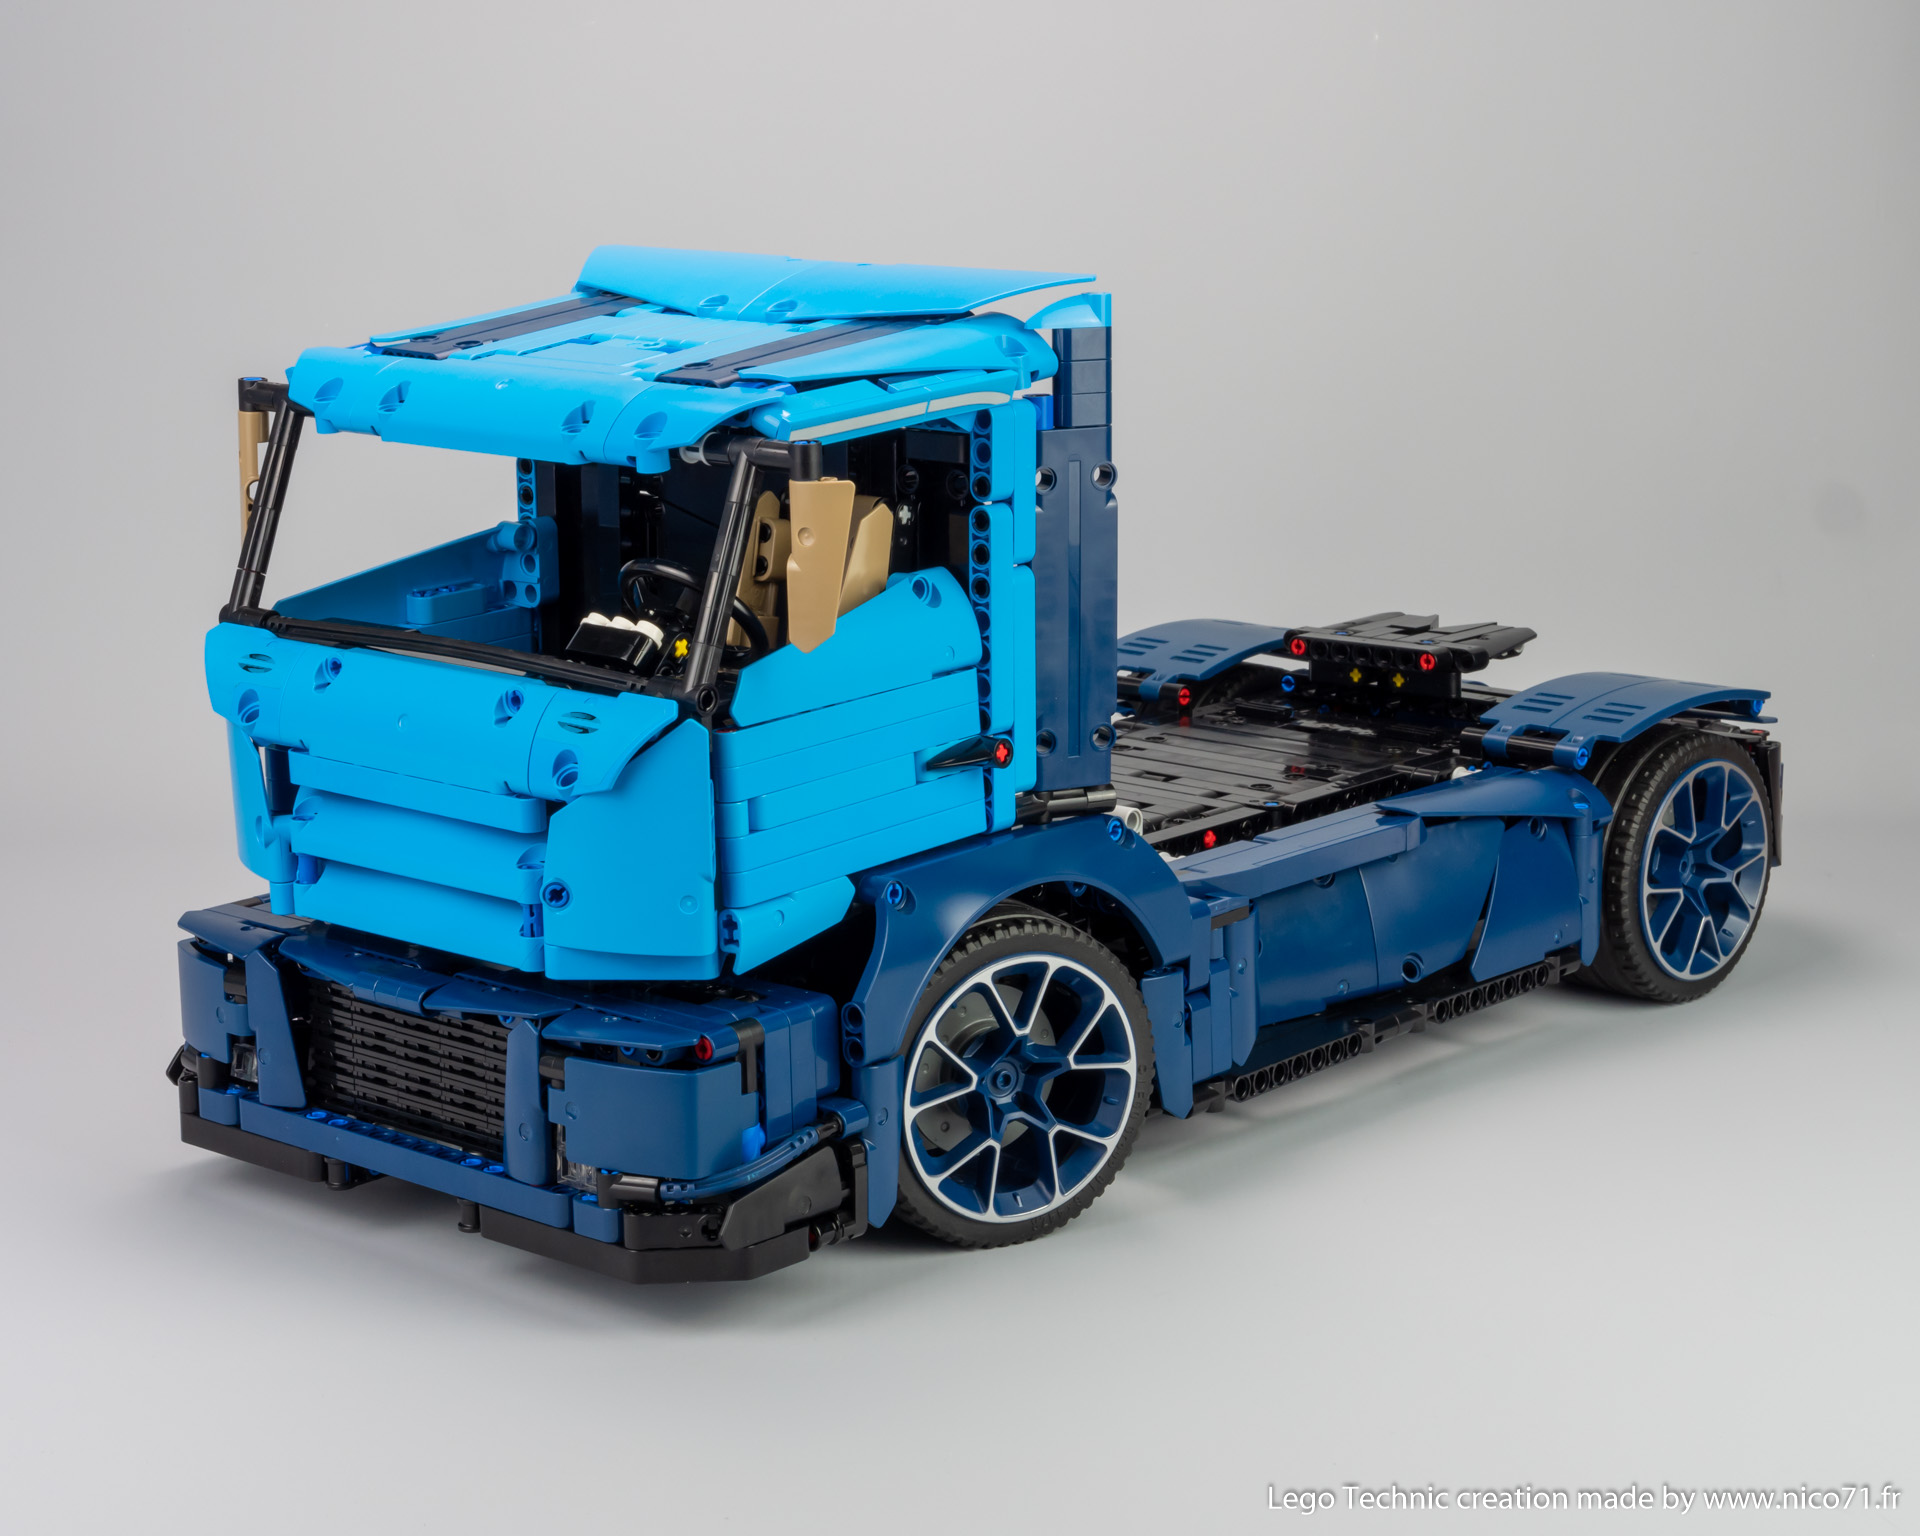 lego-42083-model-b-race-truck-2.jpg